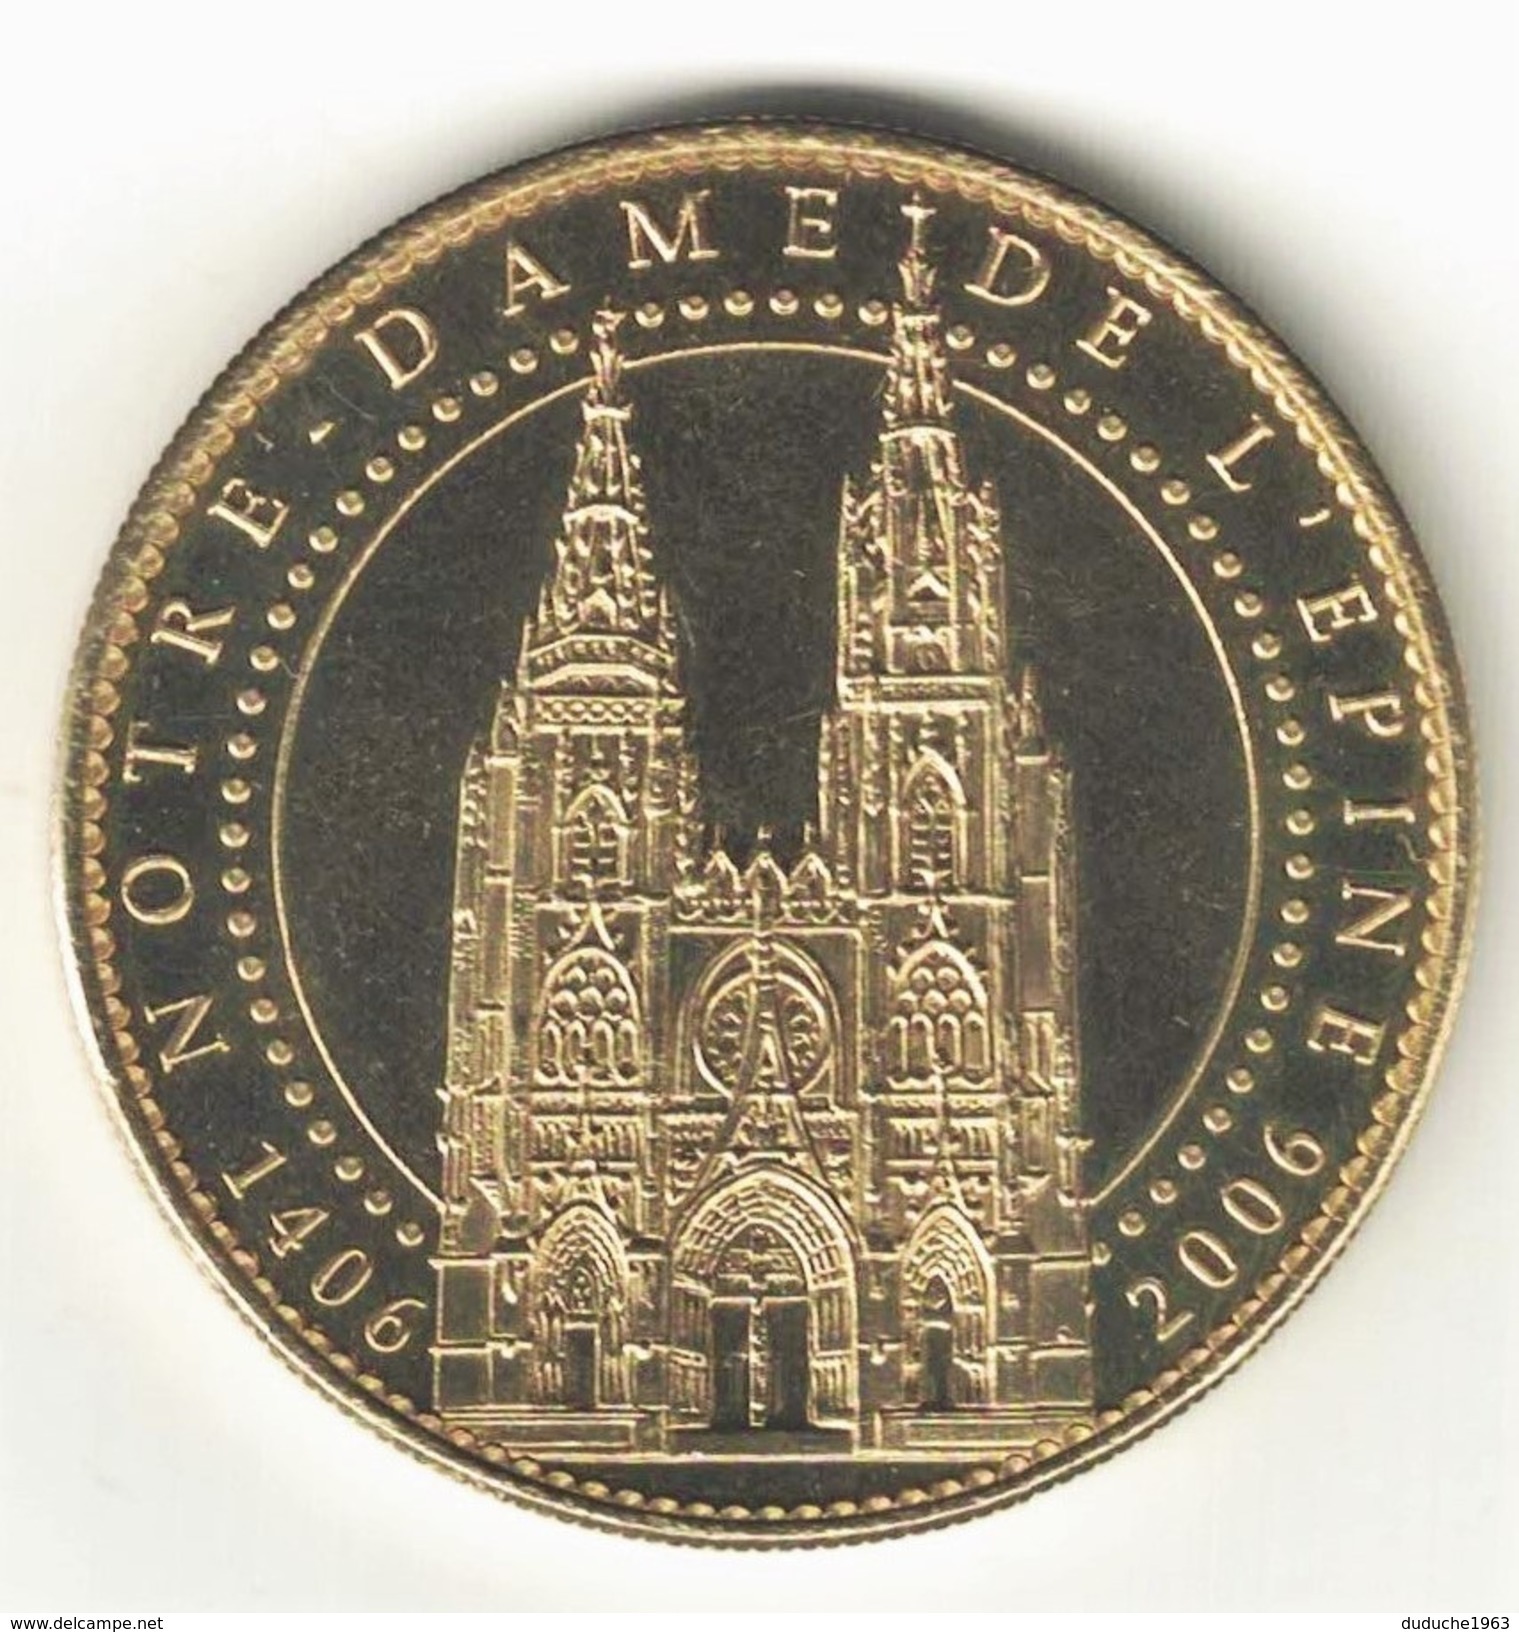 Medaille Arthus Bertrand 51.L'Epine - Cathédrale Notre Dame 2006. Neuve - 2006